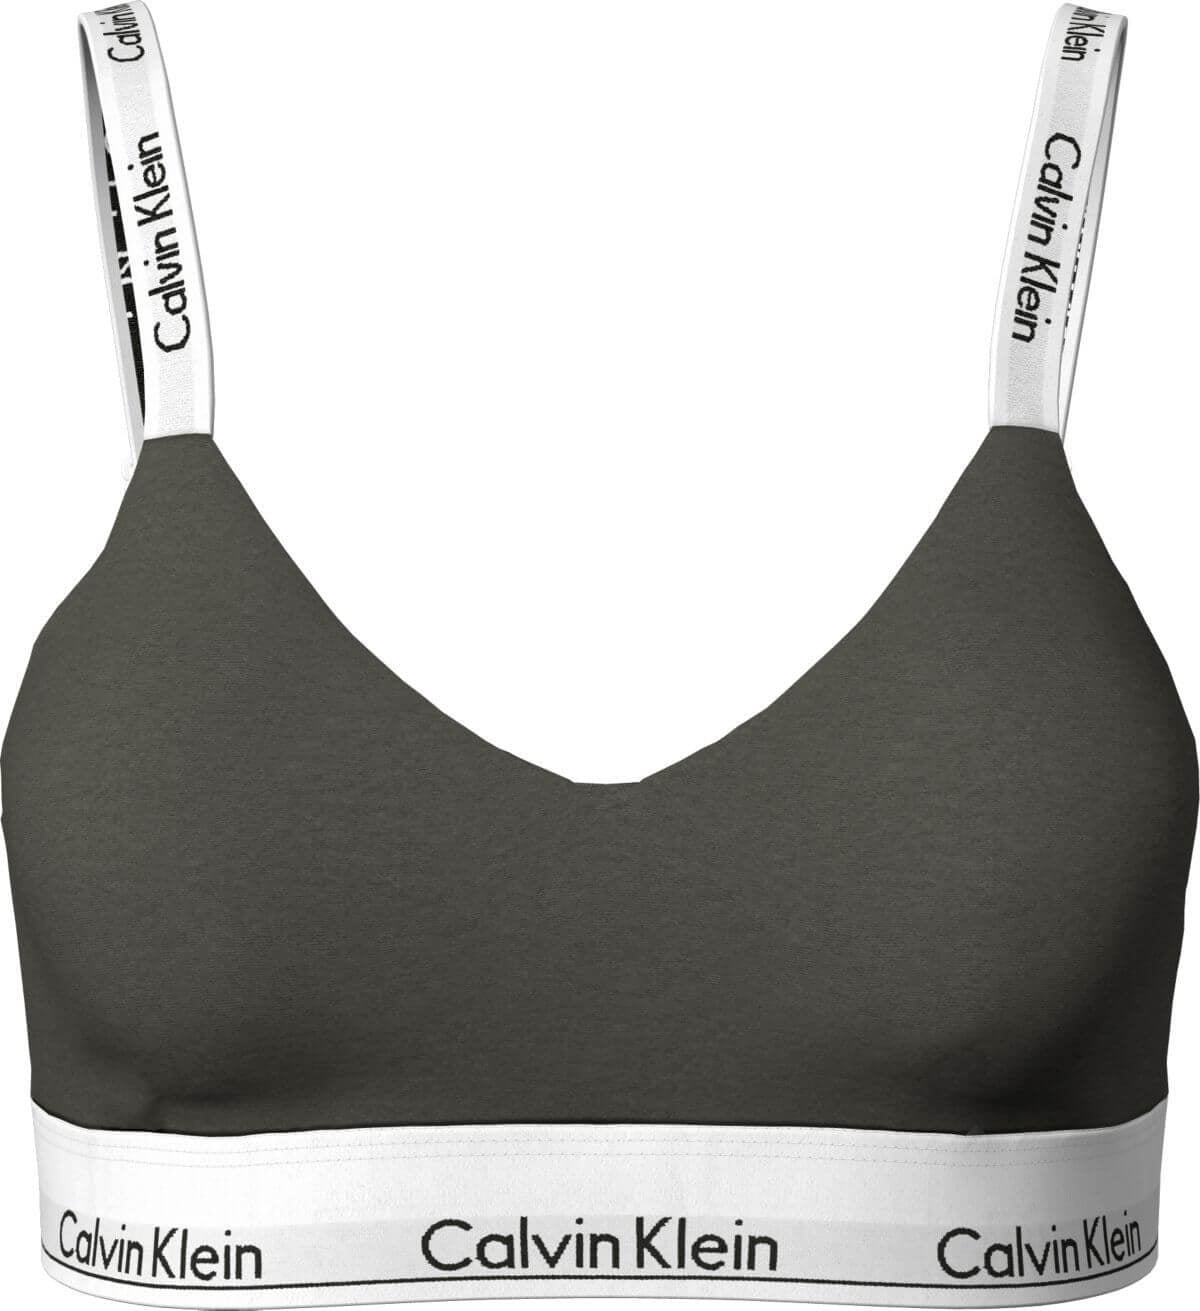 145106 | Calvin Klein - Modern Cotton 9MD Army.....